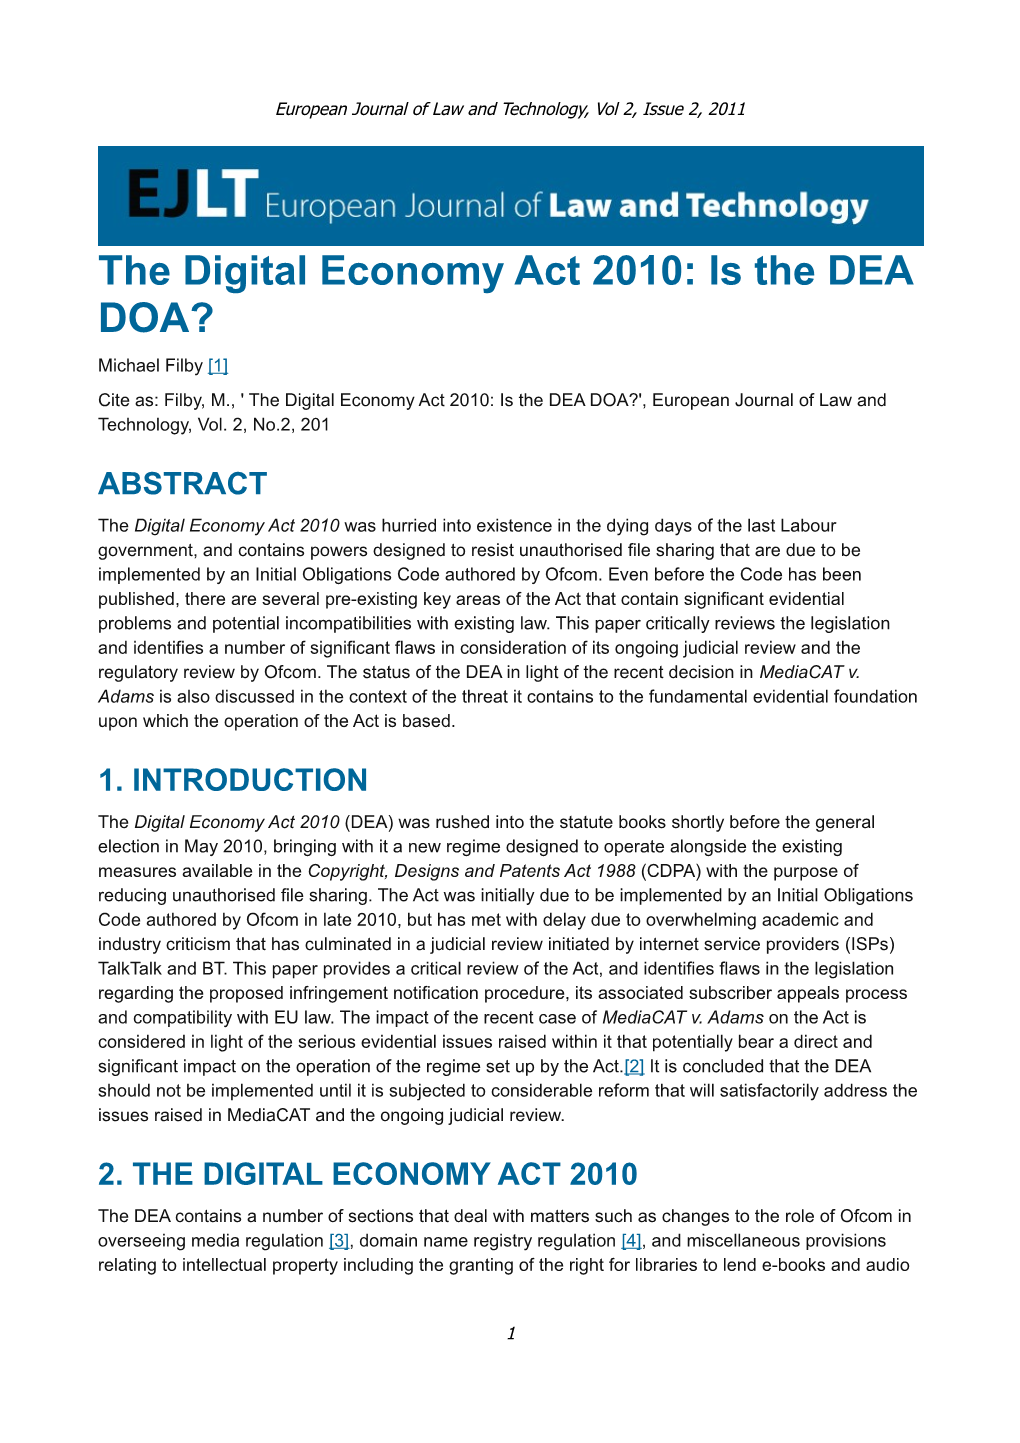 The Digital Economy Act 2010